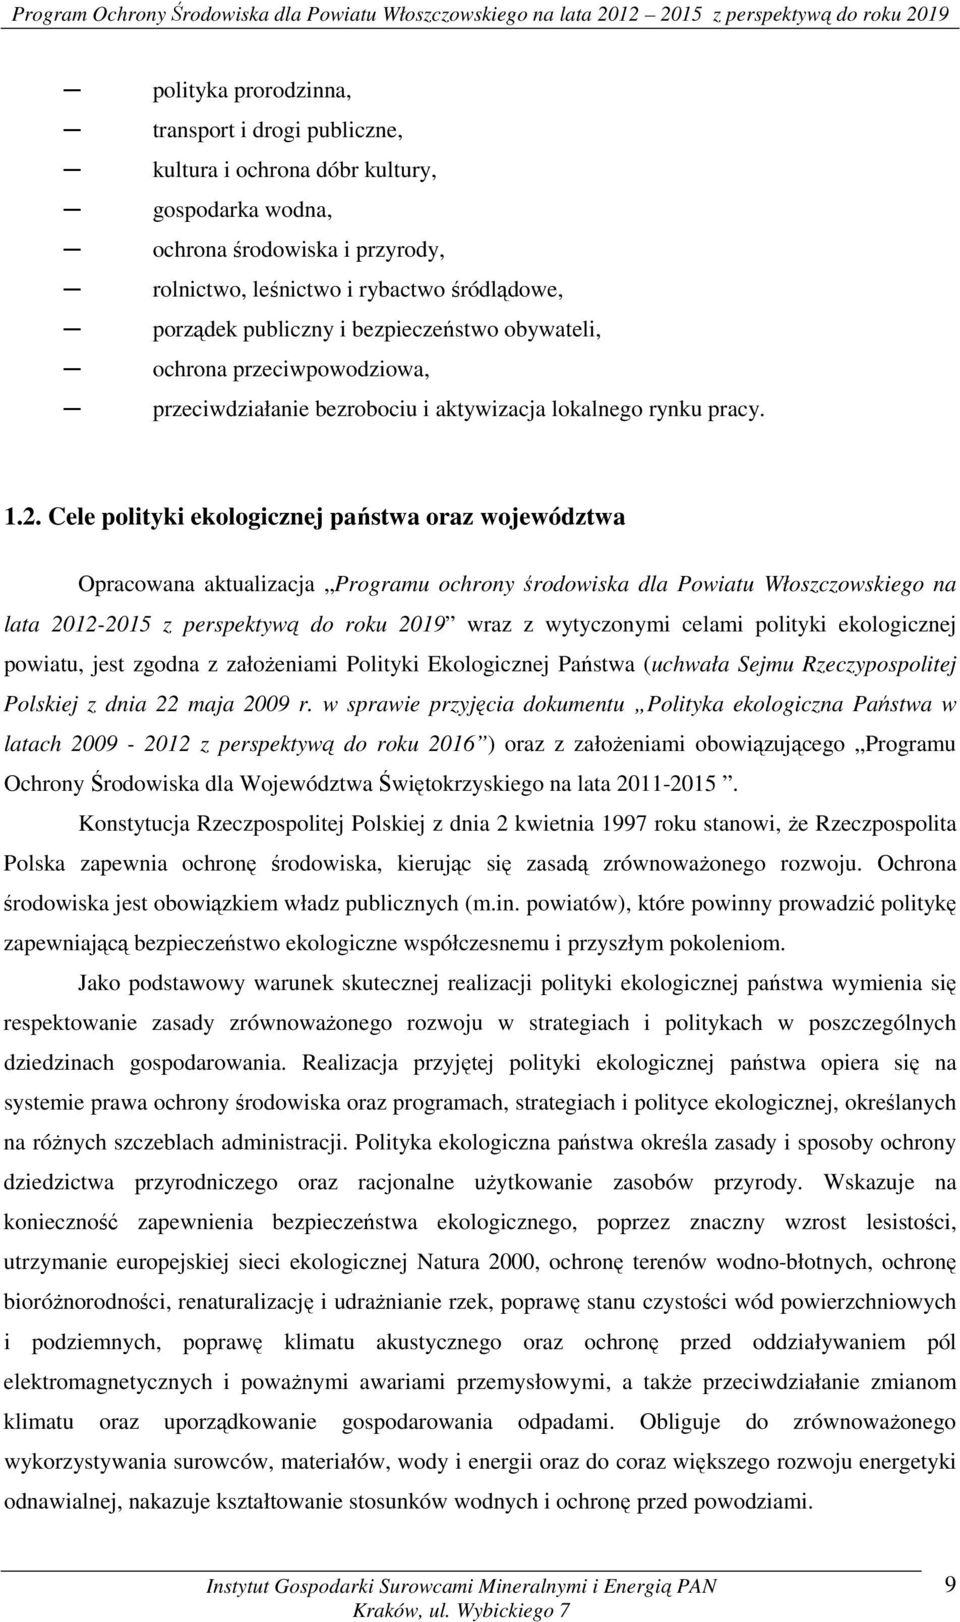 Cele polityki ekologicznej państwa oraz województwa Opracowana aktualizacja Programu ochrony środowiska dla Powiatu Włoszczowskiego na lata 2012-2015 z perspektywą do roku 2019 wraz z wytyczonymi